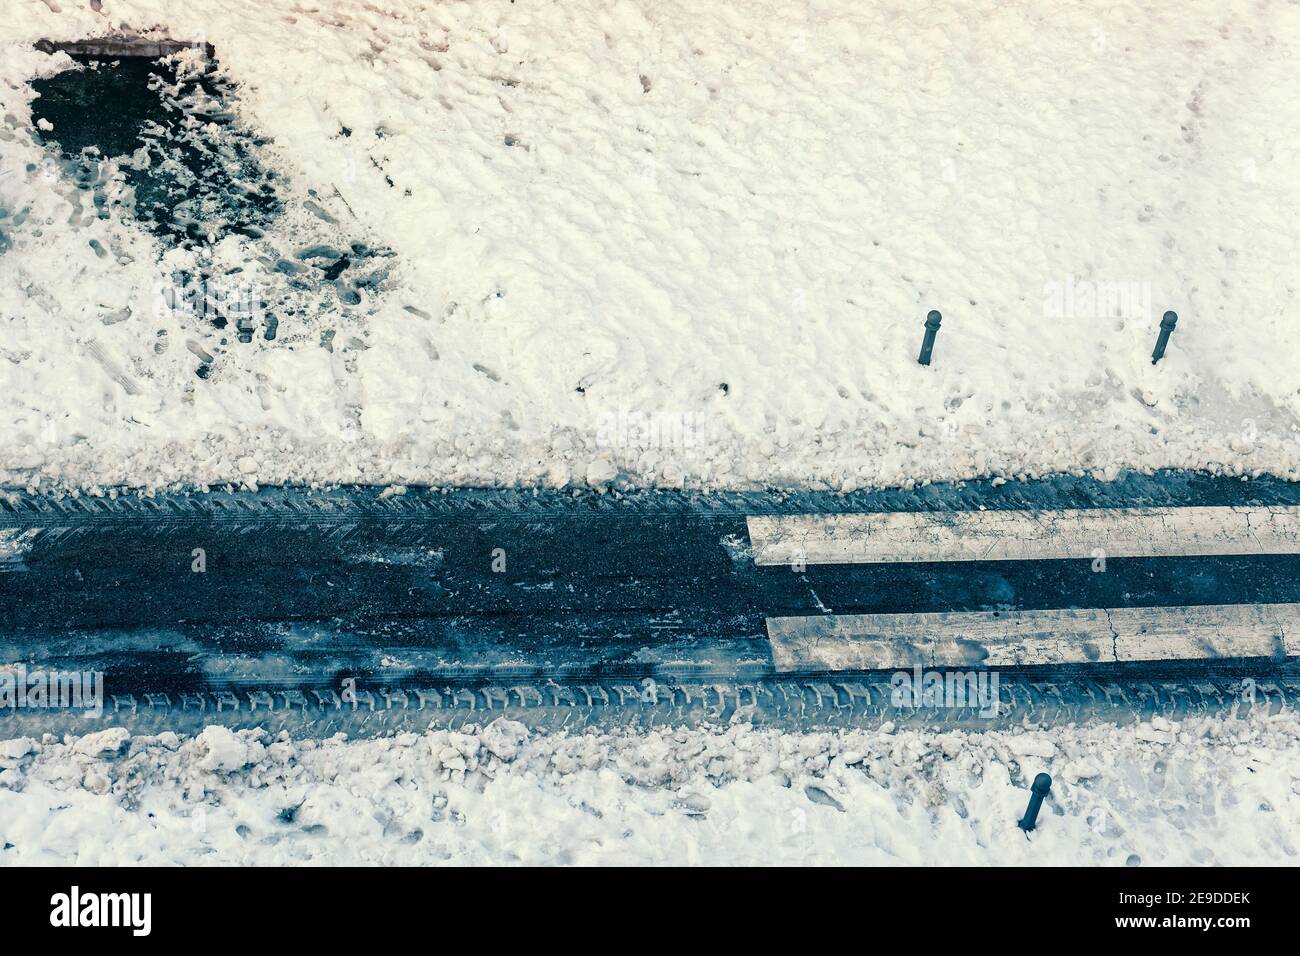 vue de dessus de la route dégagée de la neige pour permettre aux voitures pour circuler Banque D'Images